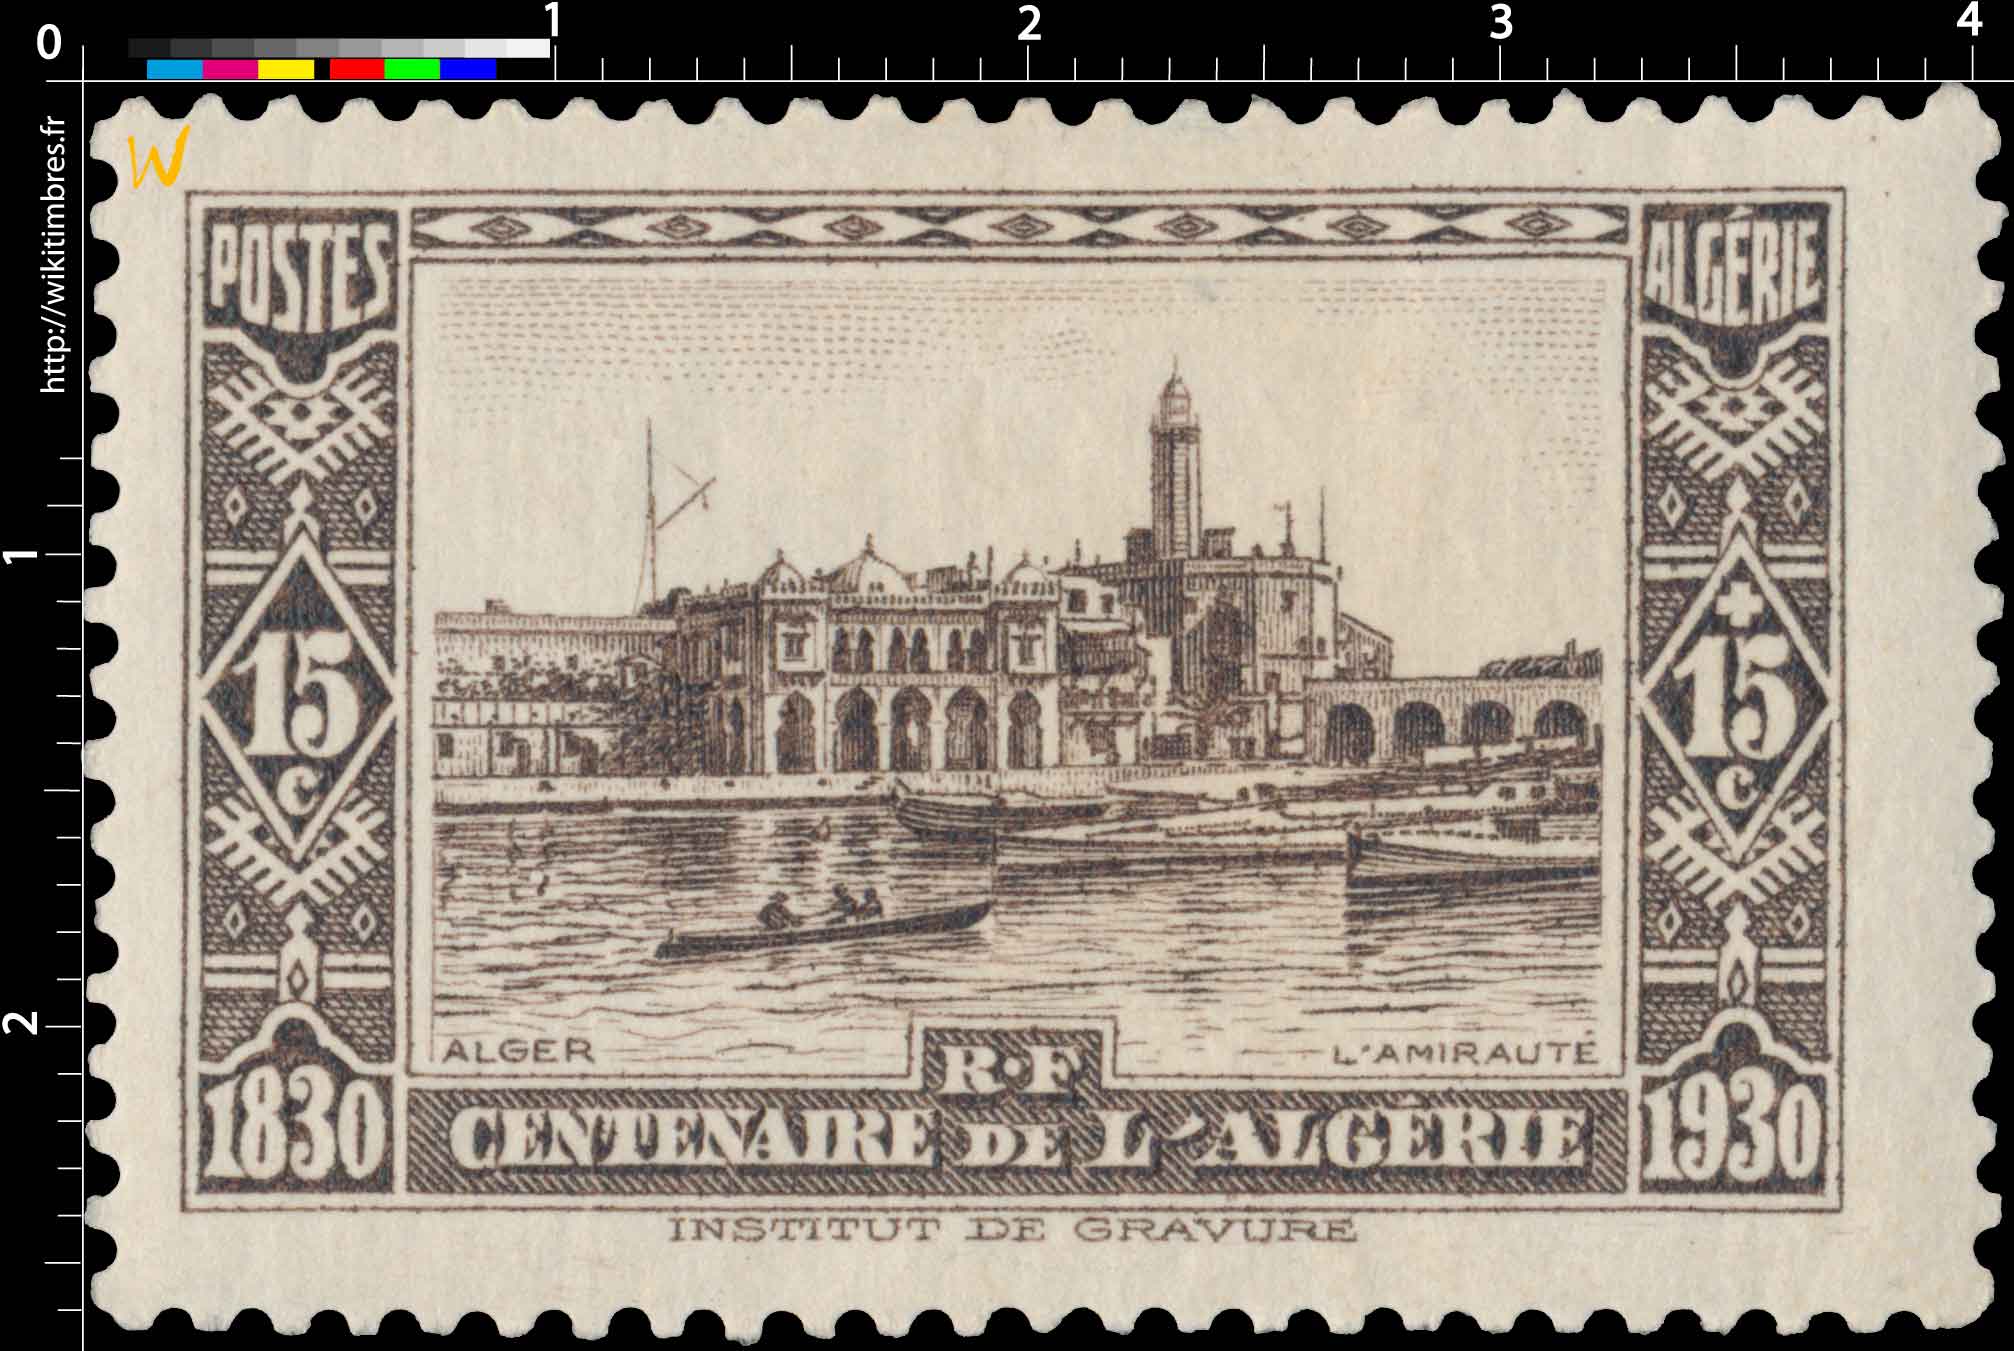 Algérie - Alger - L'Amirauté - Centenaire de l'Algérie 1830 - 1930